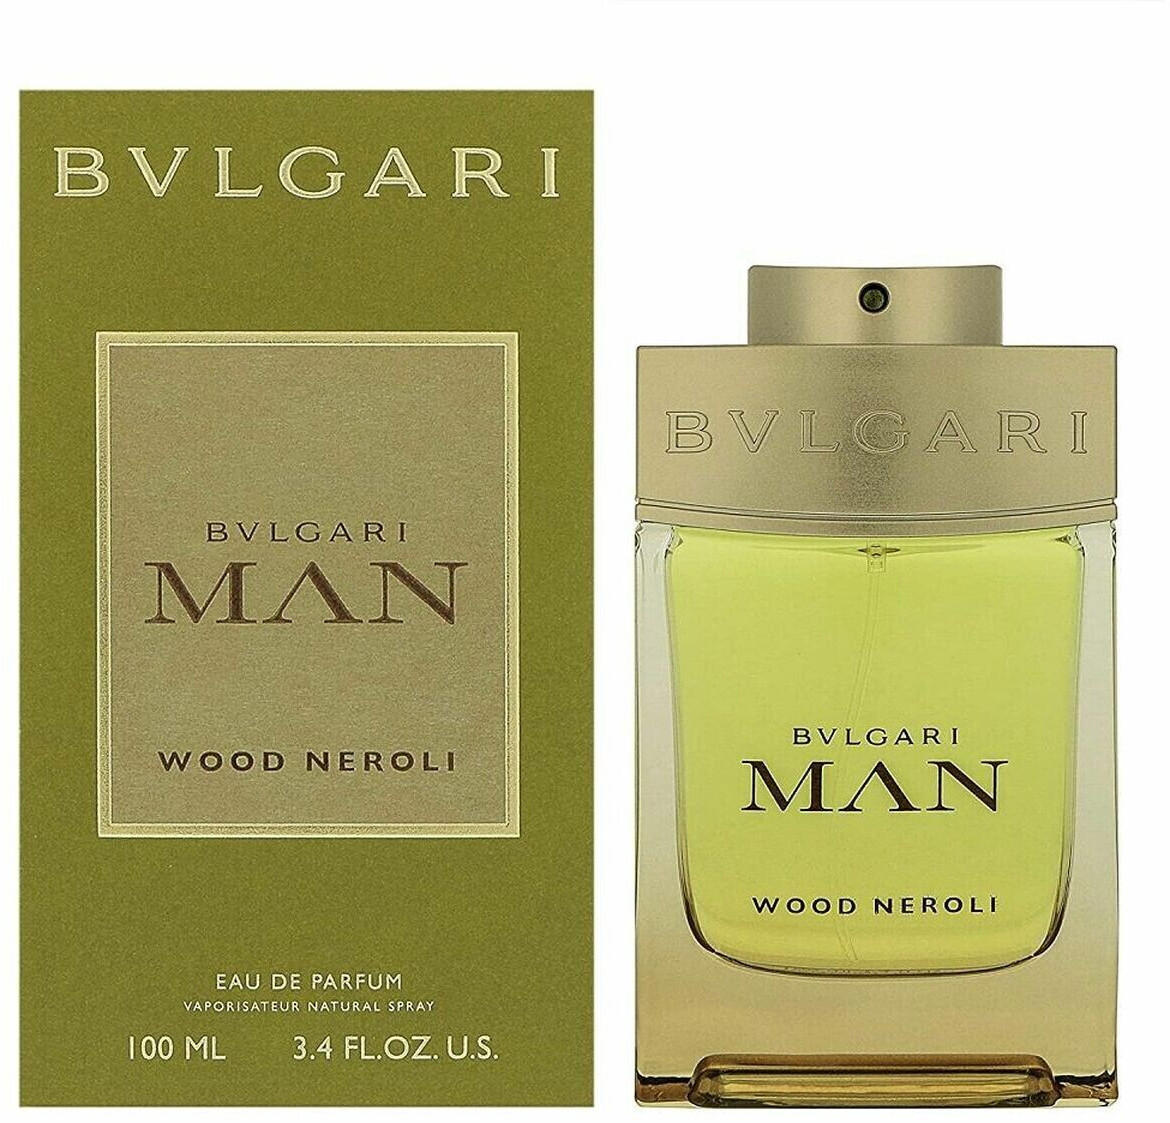 Bulgari Man Wood Neroli Eau de Parfum